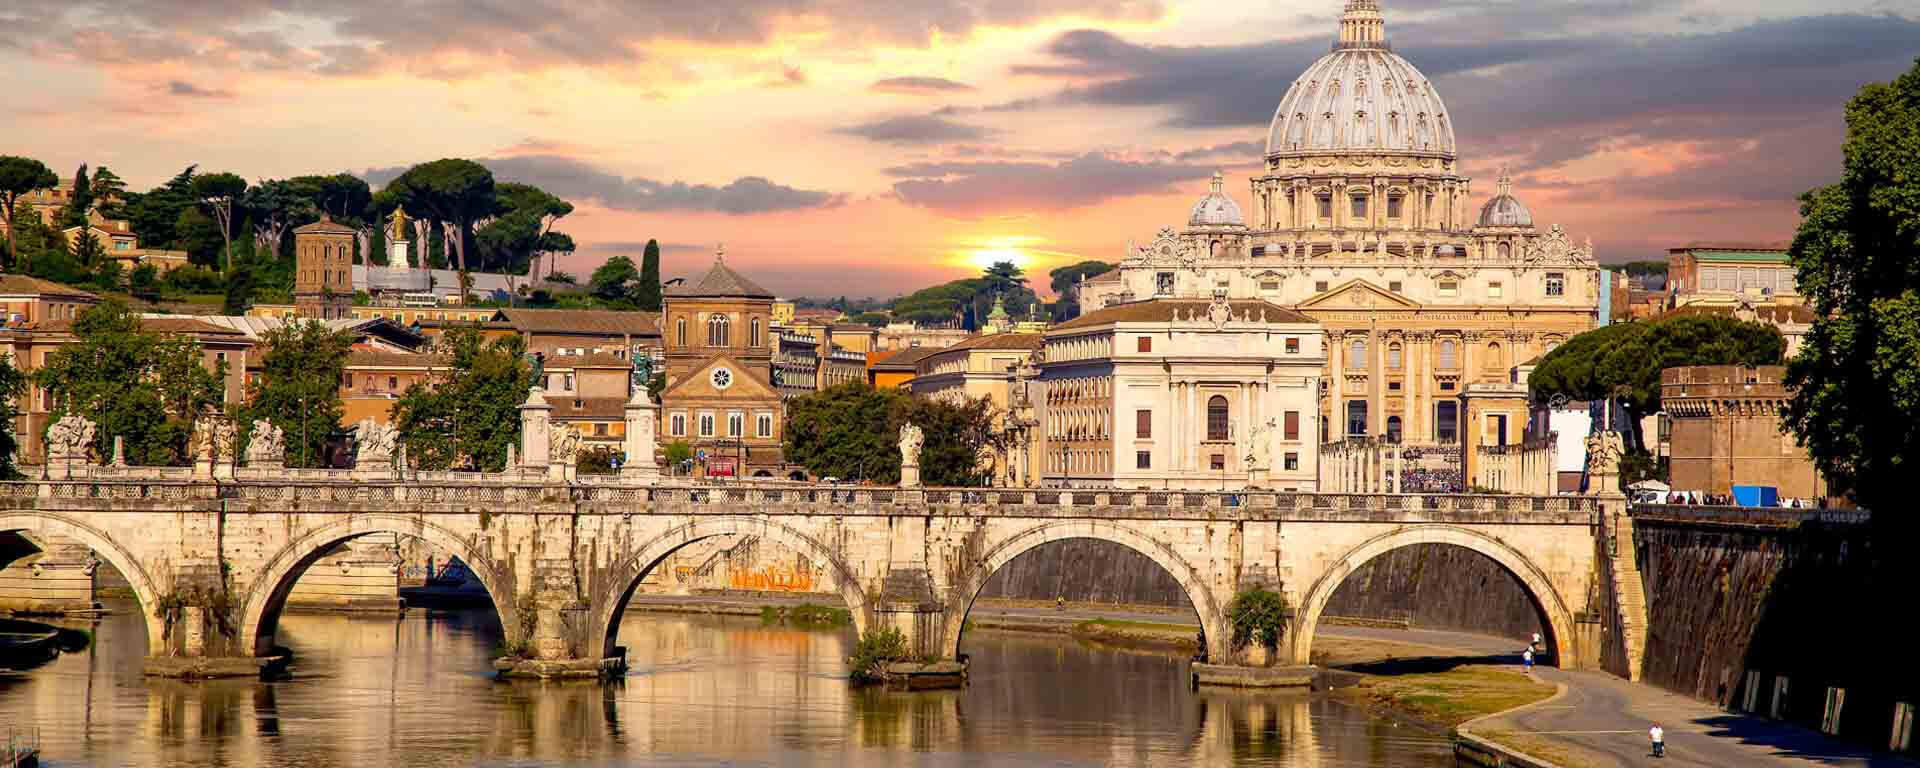 Vatican City Tour Packages